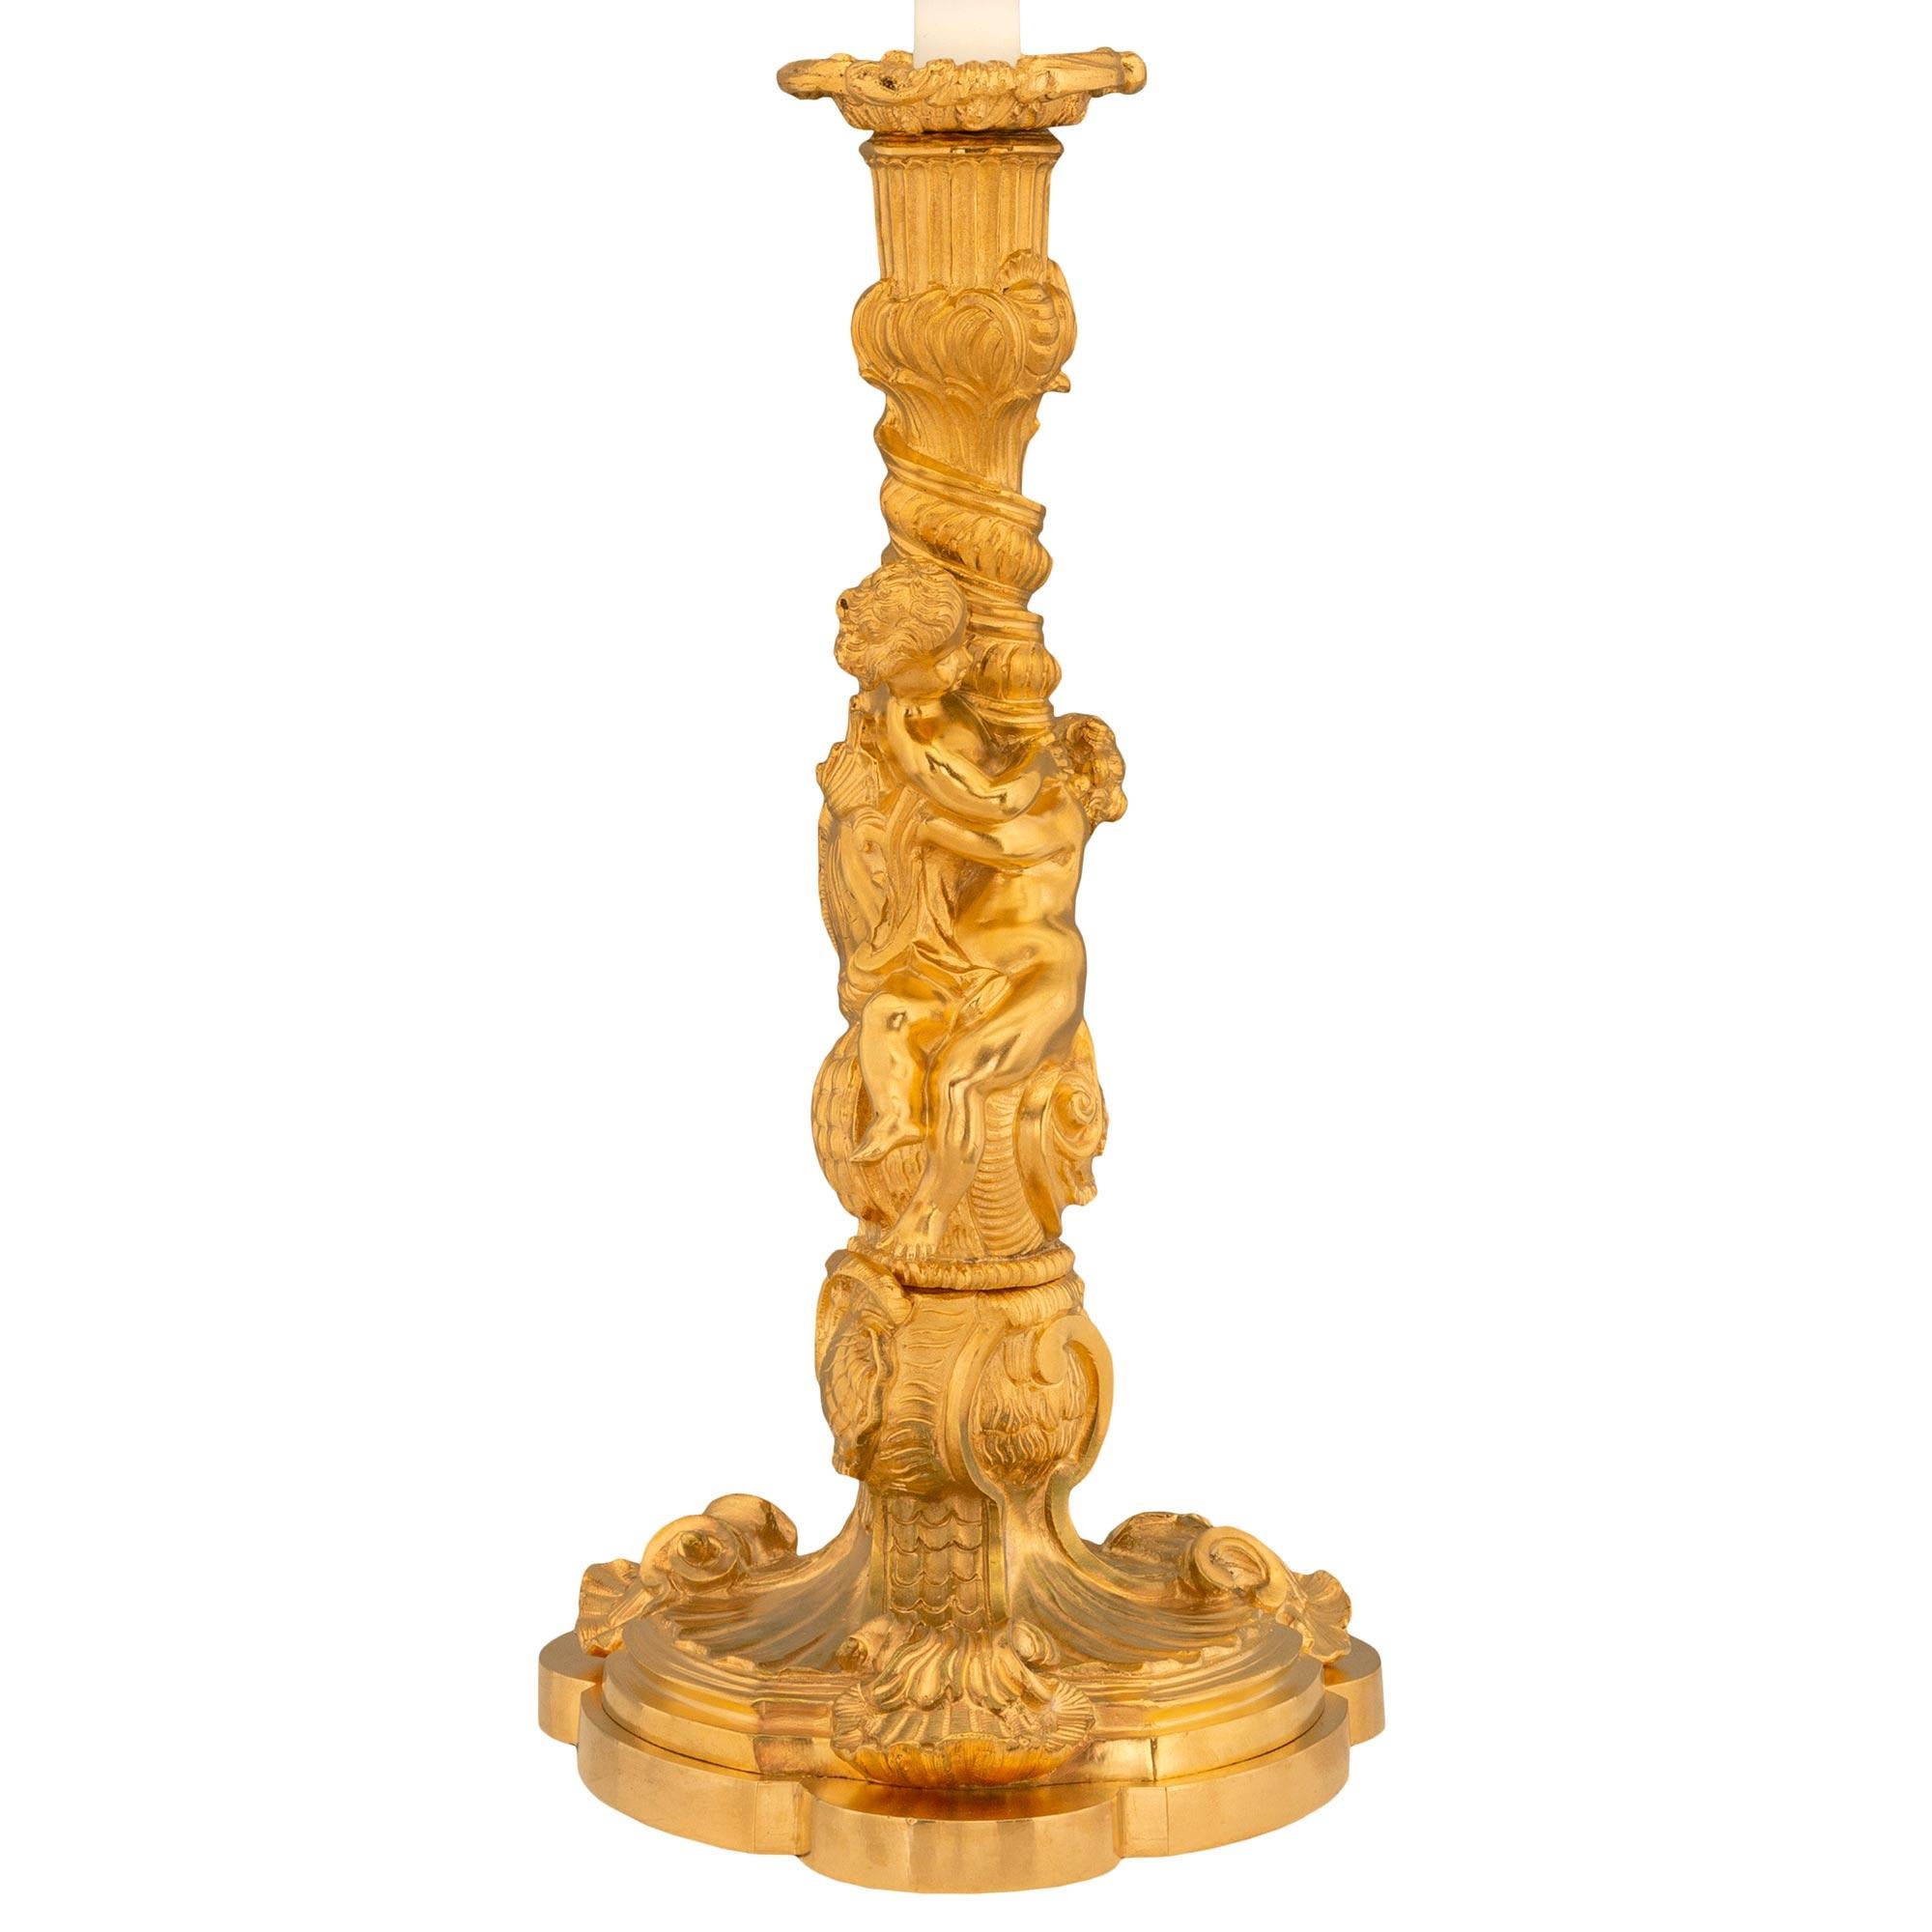 Ein schönes und sehr hochwertiges Paar französischer Kerzenleuchter aus der Belle Époque des 19. Jahrhunderts aus Louis XV. Jeder Kerzenhalter wird von einem feinen, gewellten Sockel mit einer zarten, gesprenkelten Umrandung und drei